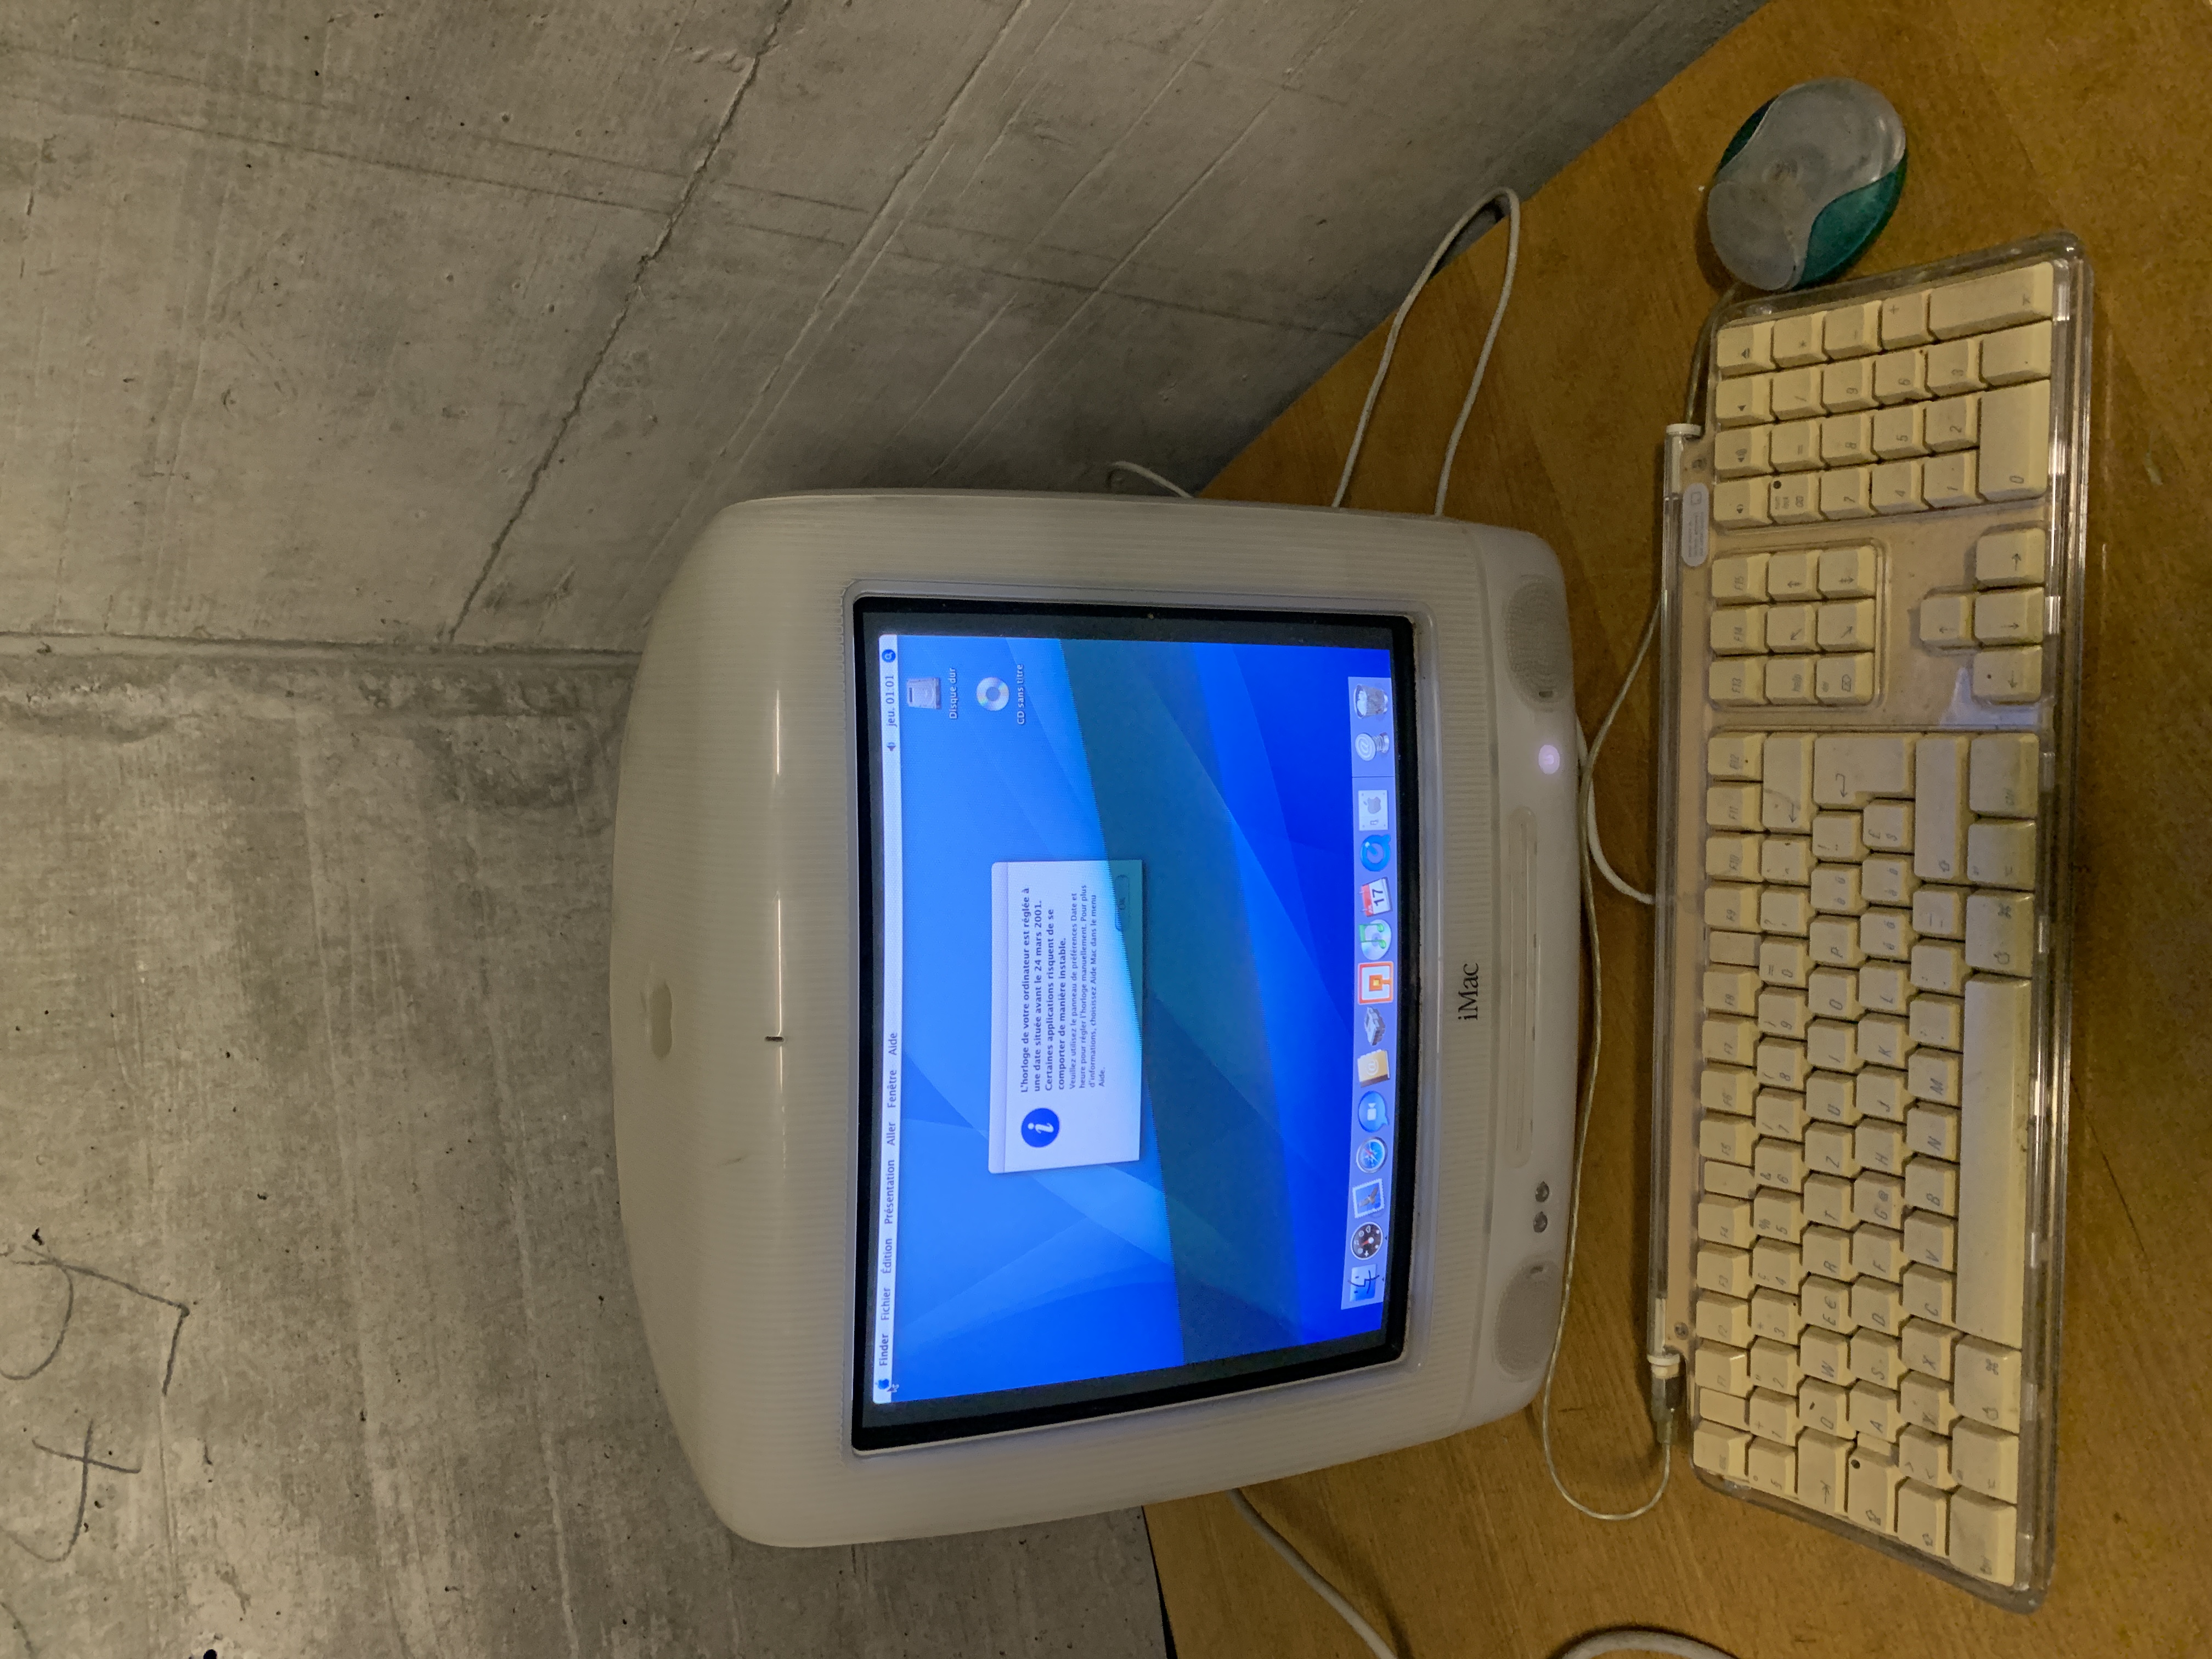 iMac G3 White